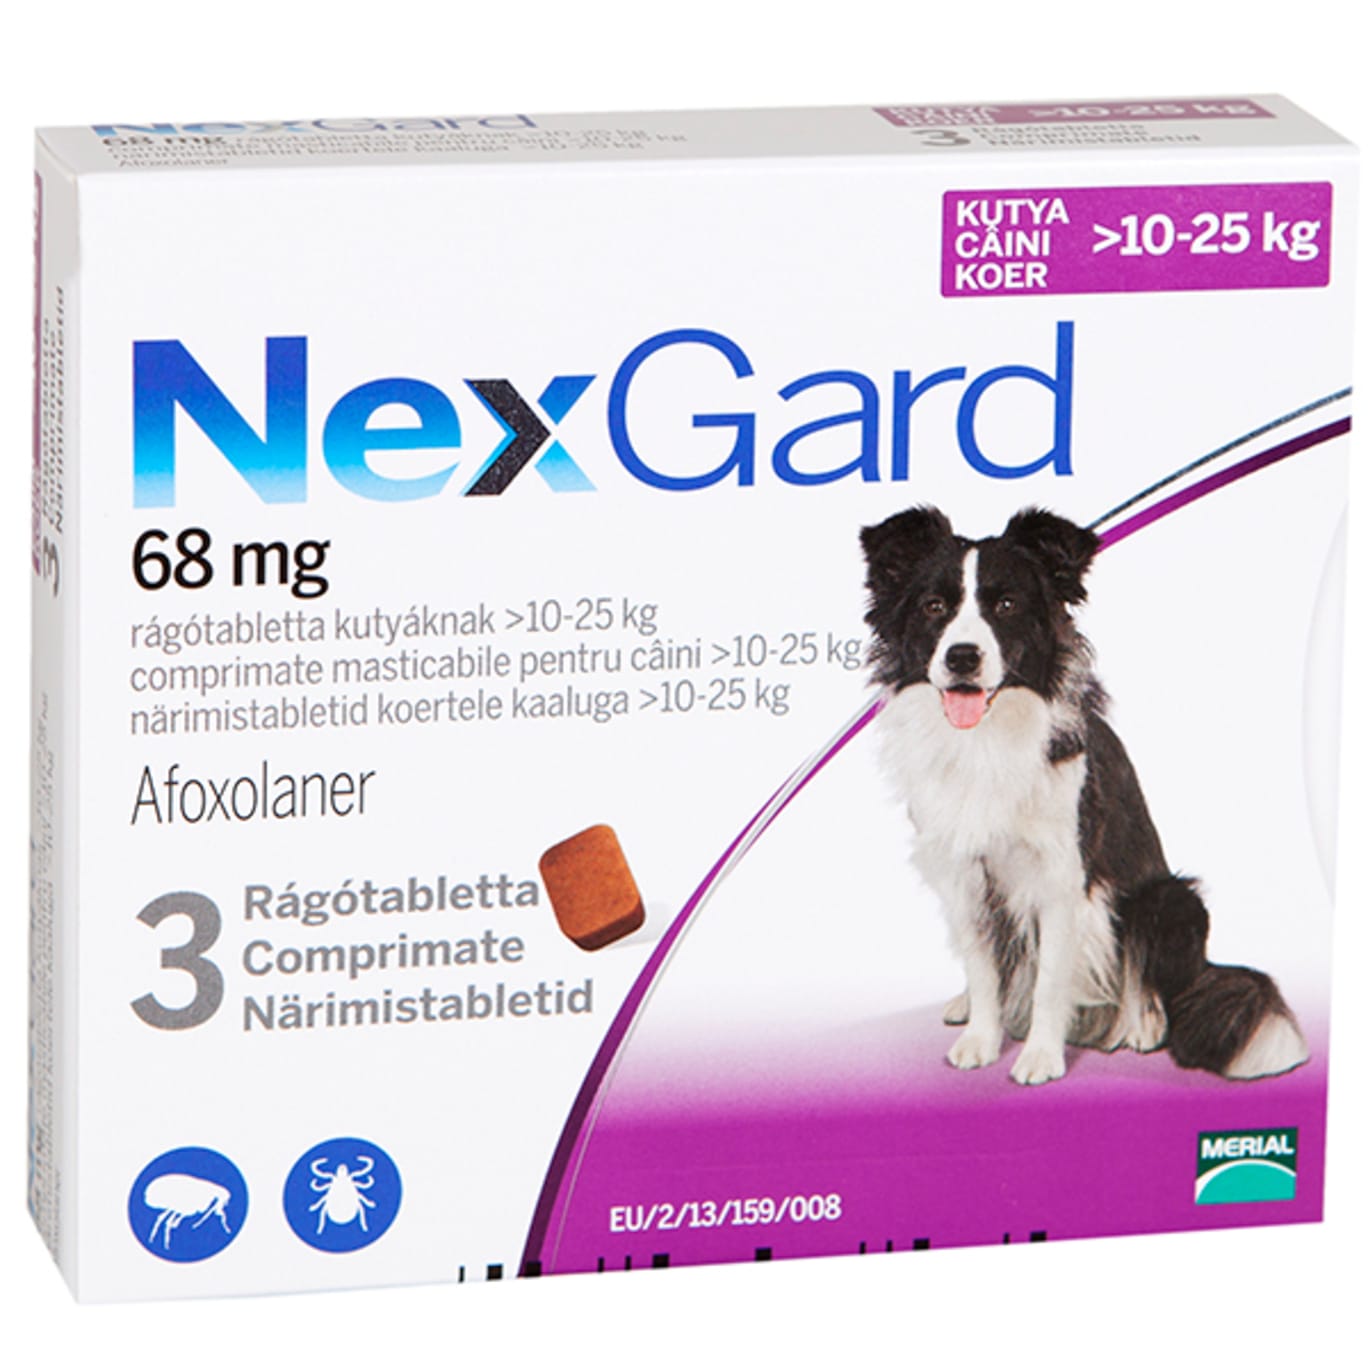 Nexgard 68mg For Dogs